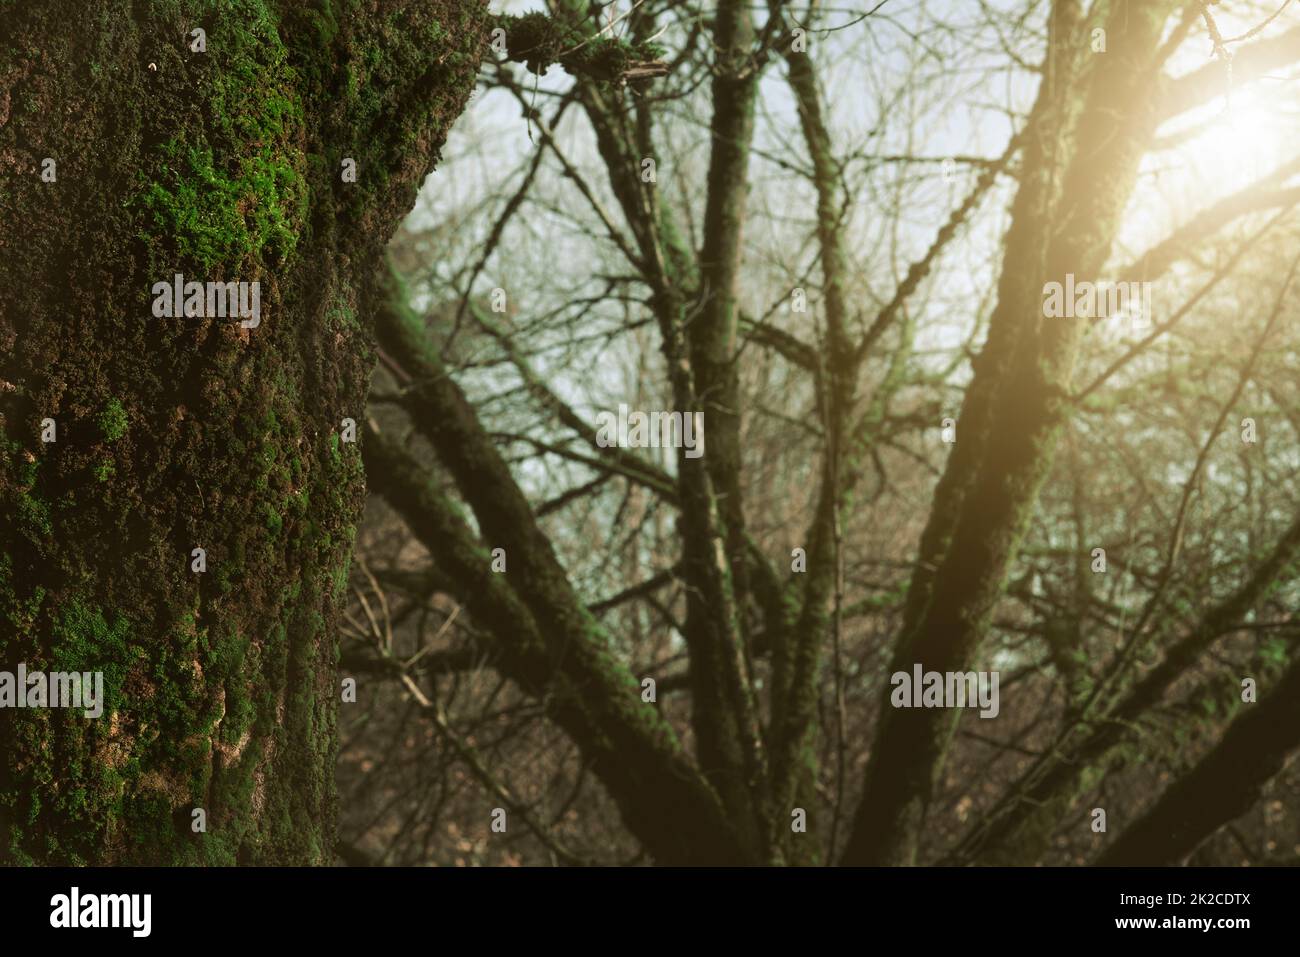 Selektiver Fokus grünes Moos auf einem Baumstamm im Wald. Baumstamm bedeckt mit grünem Moos auf unscharfen Hintergründen von Baumzweigen im Dschungel. Schönheit in der Natur. Naturtapete. Biologische Vielfalt in Wäldern. Stockfoto